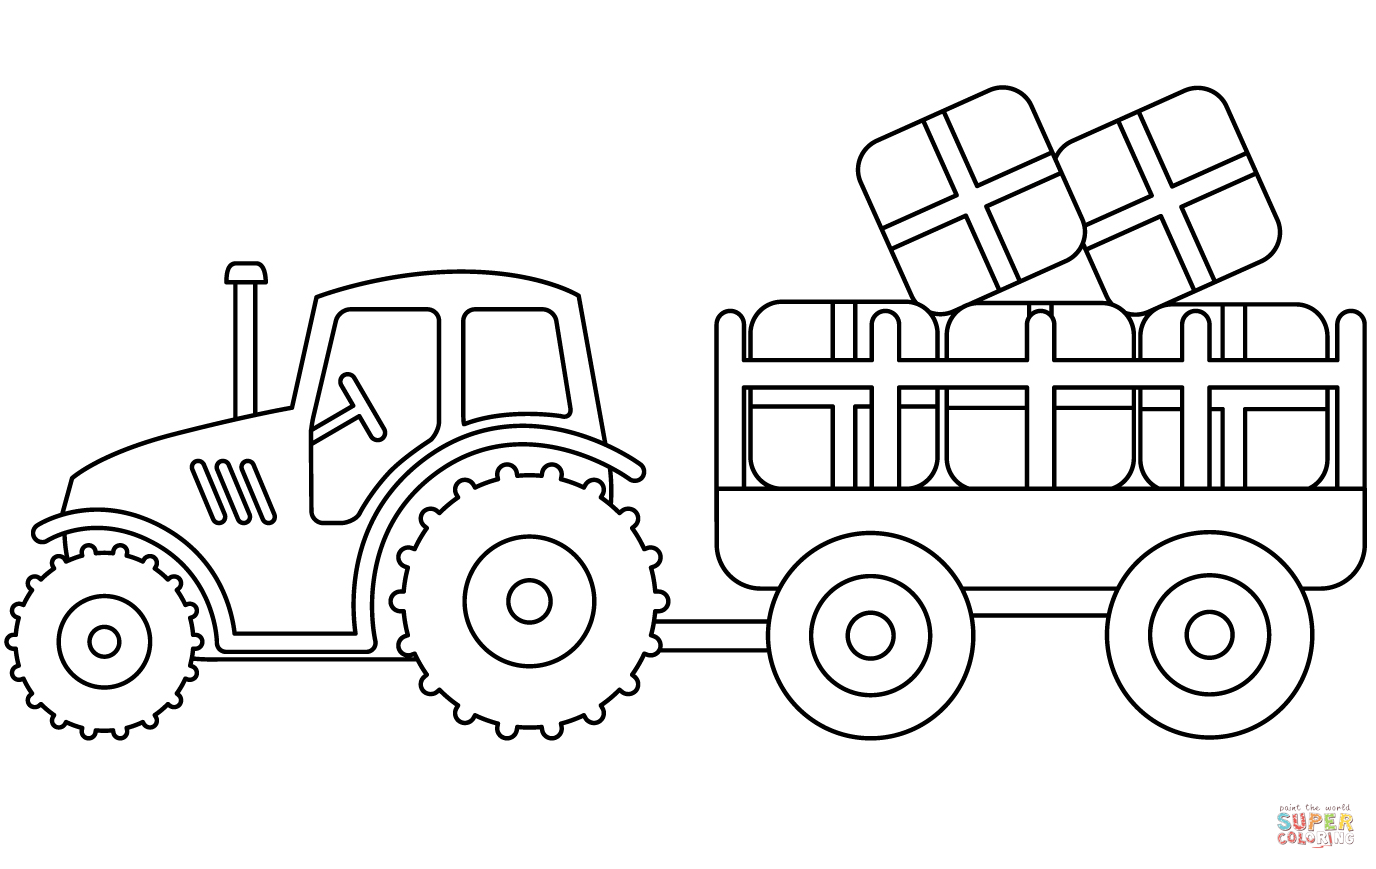 Раскраска трактор с тележкой для детей 3-4 лет